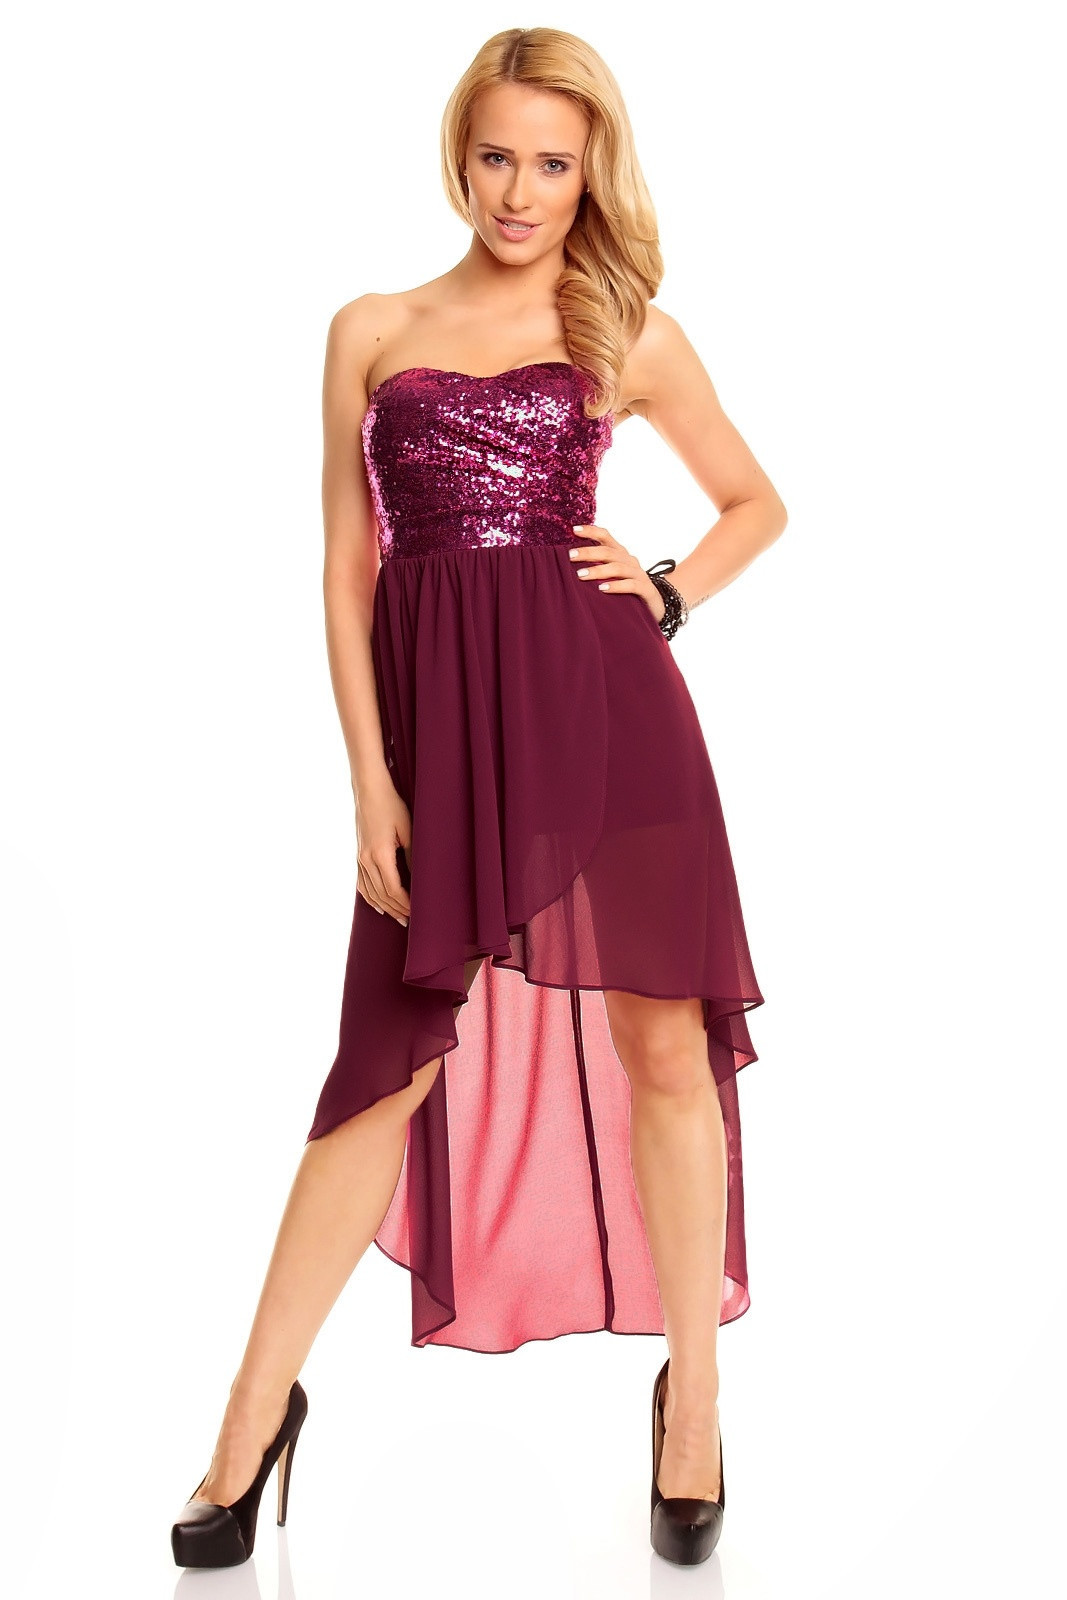 Dámské společenské šaty korzetové MAYAADI s asymetrickou sukní fialové - Fialová - MAYAADI L